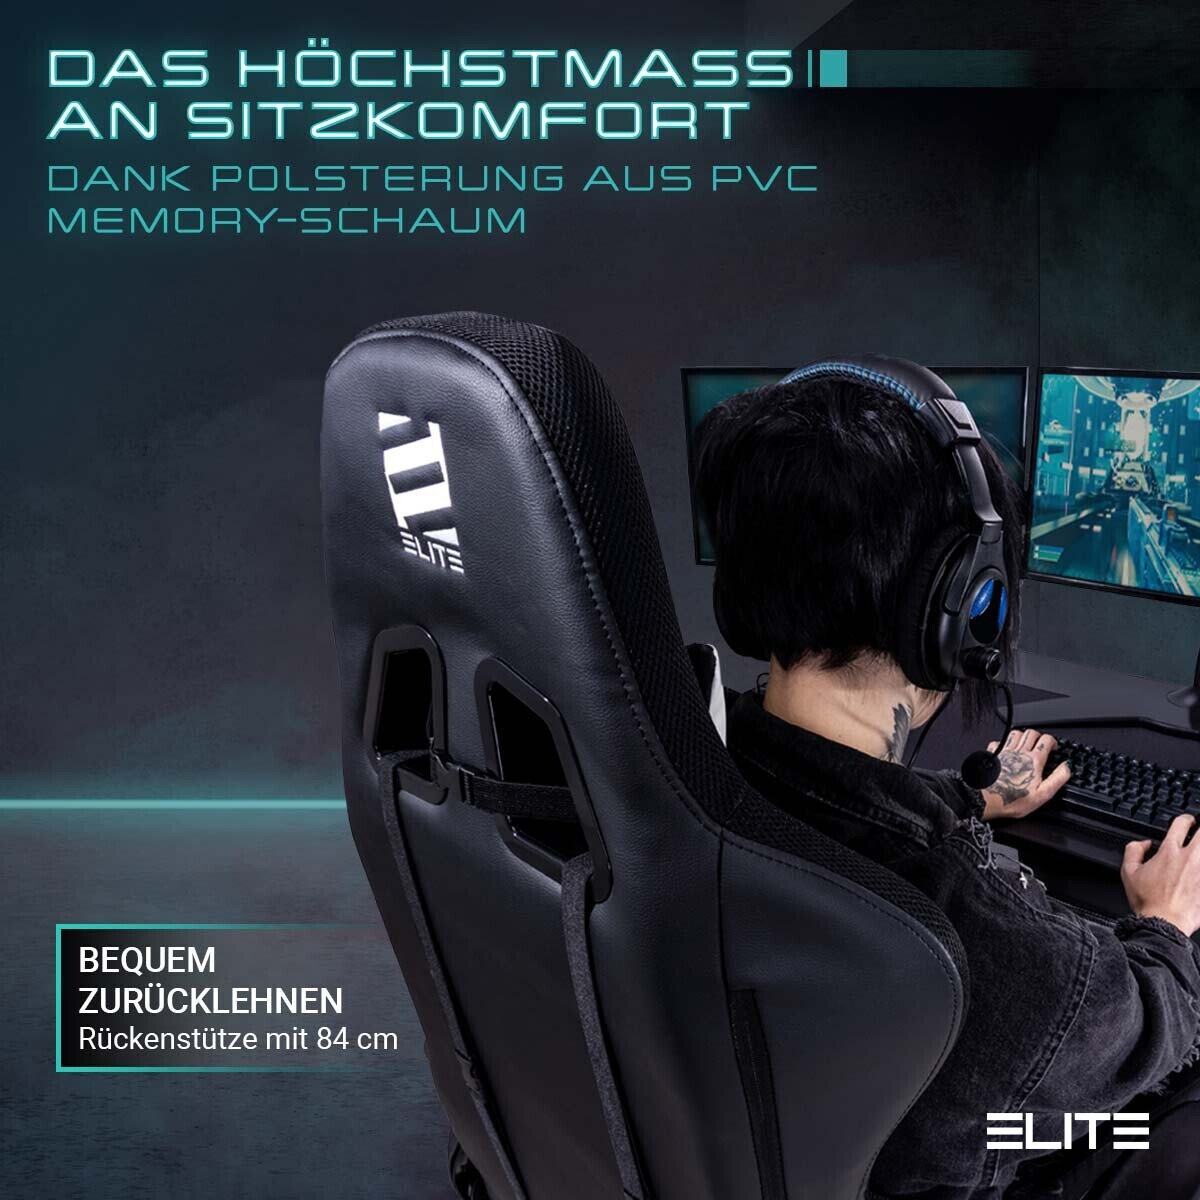 ELITE Gaming-Stuhl DESTINY, Rücken- und Nackenkissen, Wippmechanik, bis  170kg, Sitzhöhe 45-55, MG200 (Schwarz/Grün) bei Marktkauf online bestellen